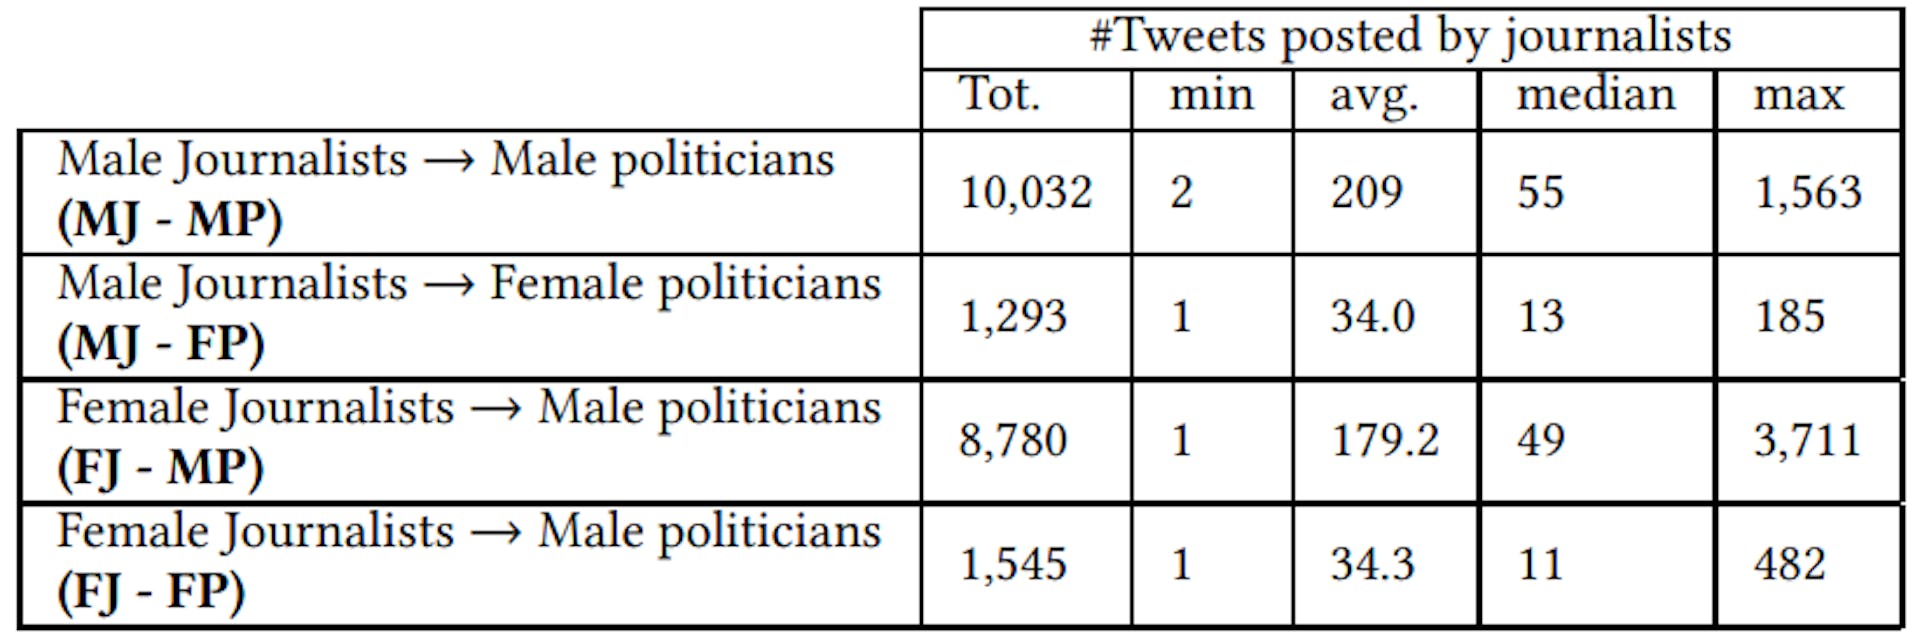 表 1：印度记者发布的提及政治人物的推文数量。女性政治人物的推文提及次数相对较少。